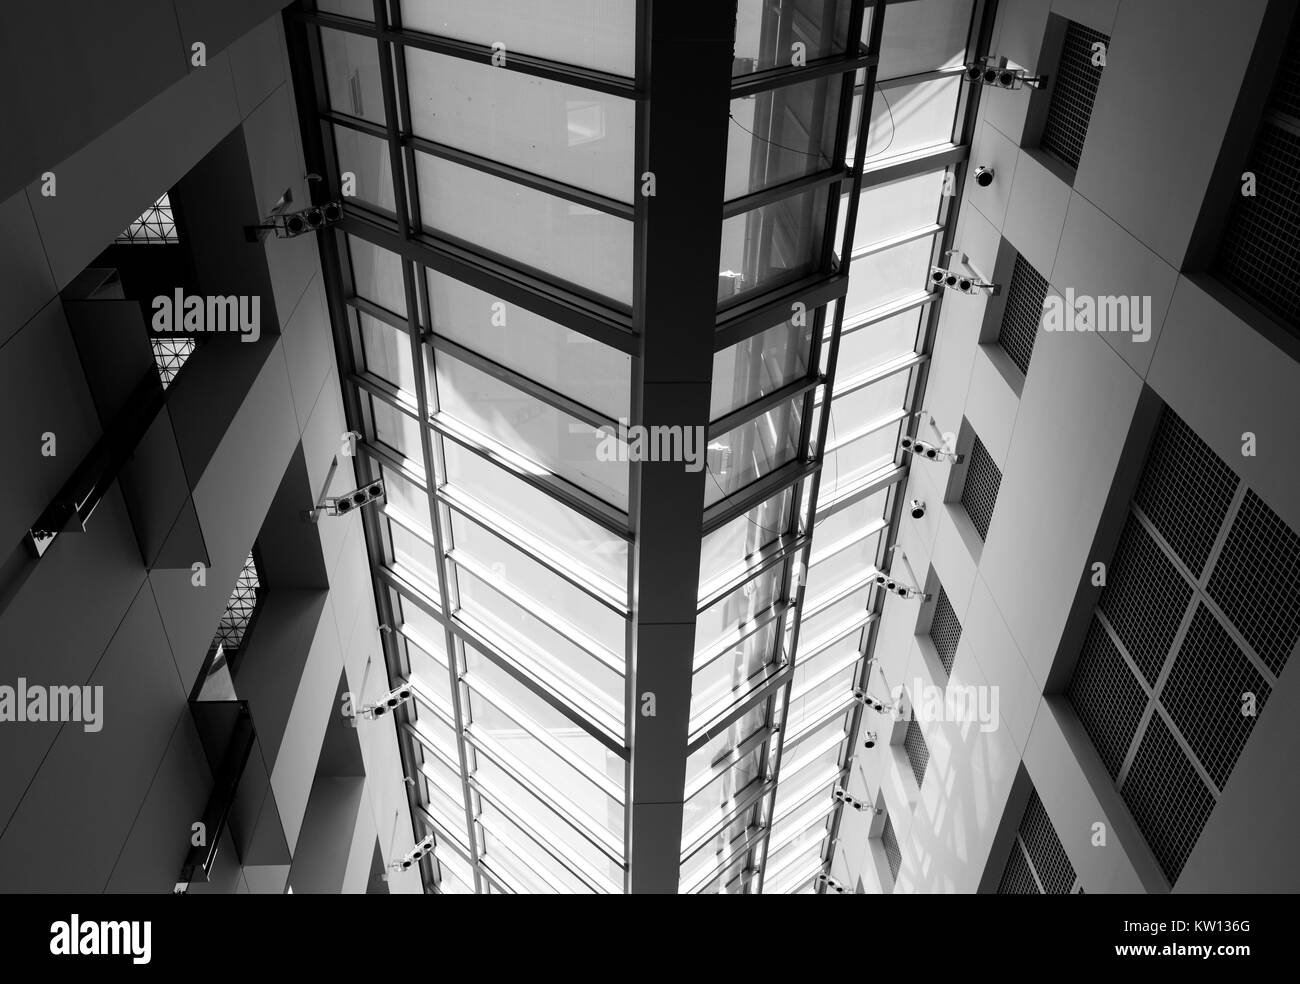 Presso il Museo di Arte Asiatica di San Francisco, overhead lucernari in vetro offrono illuminazione naturale per il museo della lobby principale, San Francisco, California, 2016. Foto Stock